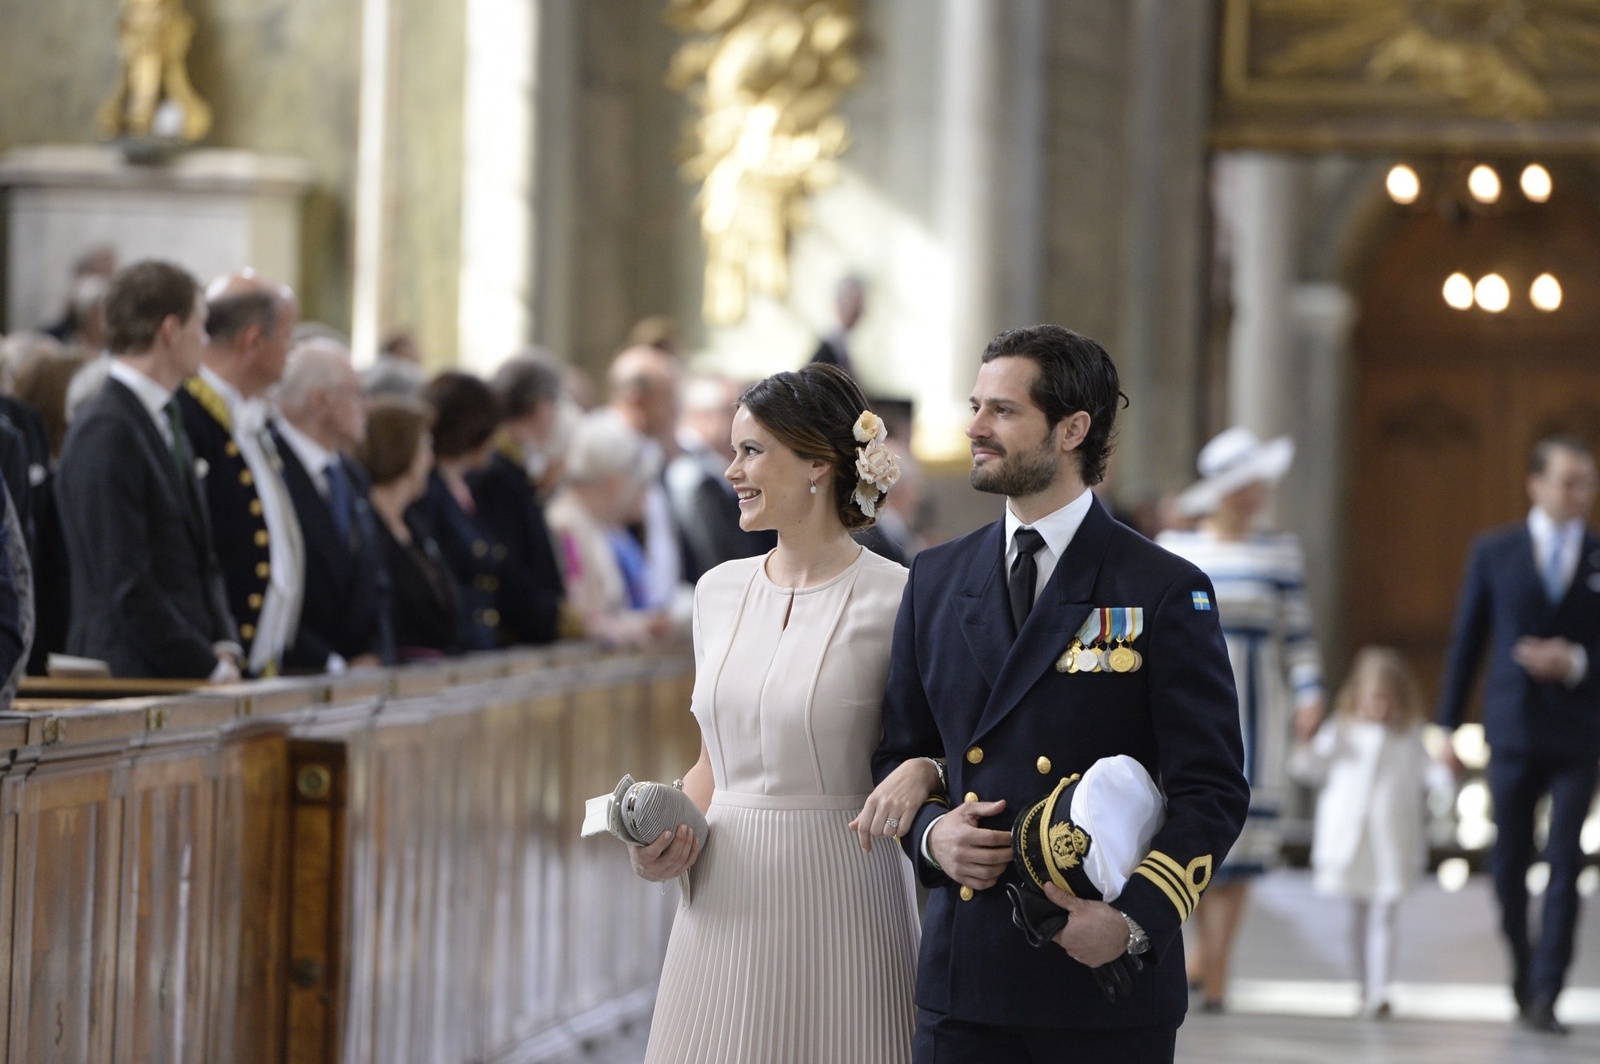 Prinsessan Sofia och prins Carl Philip anländer till Te Deum i Slottskyrkan i Stockholm lördagen den 30 april med anledning av högtidlighållandet av kung Carl Gustafs 70-årsdag. 
Foto: Jessica Gow / TT